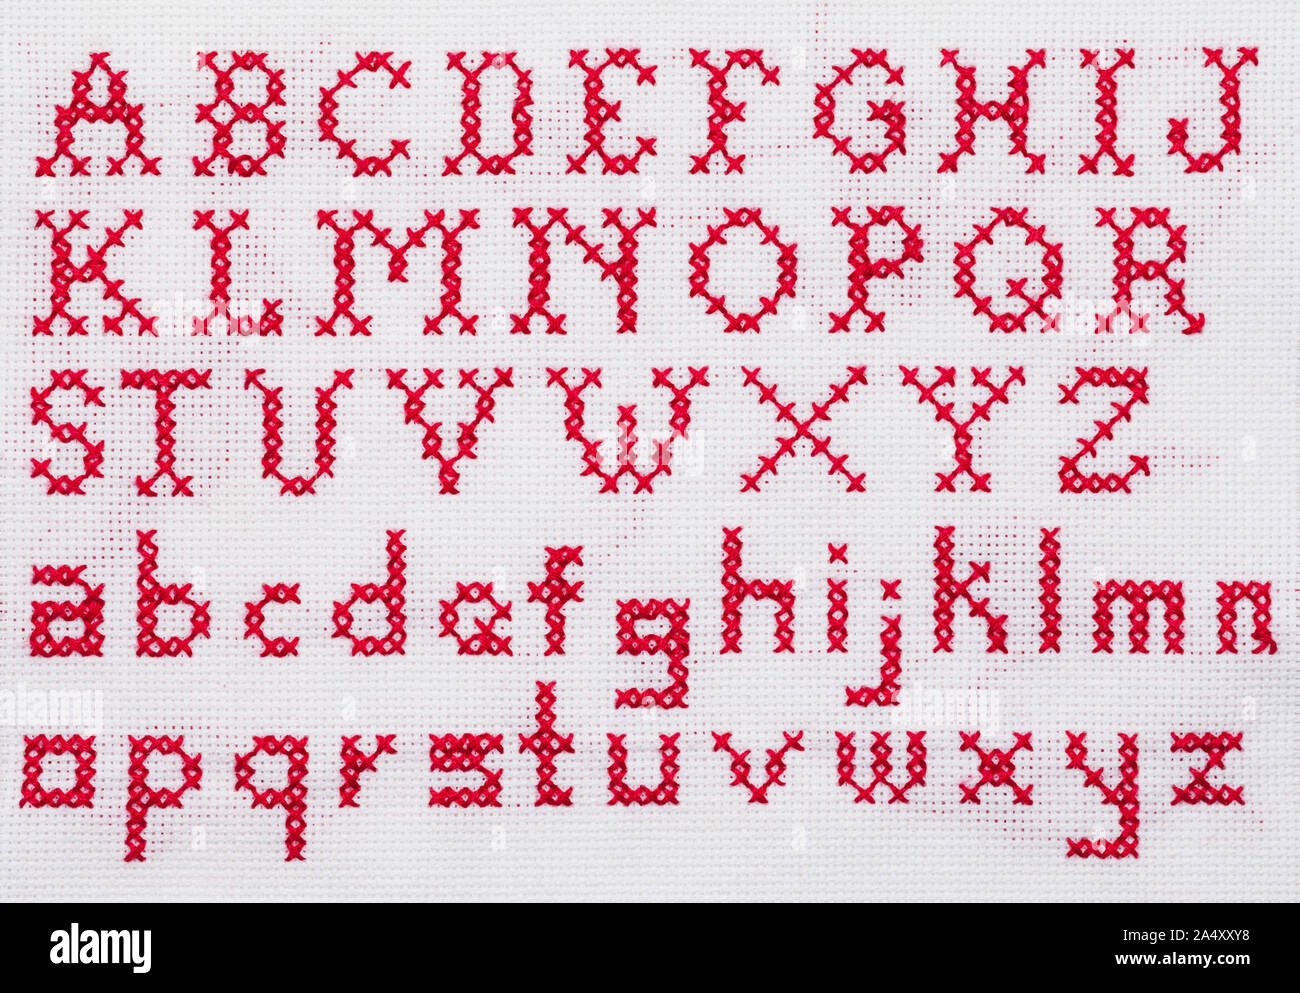 Red Alphabet Cross Stitch Sampler mit Groß- und Kleinbuchstaben. Stockfoto